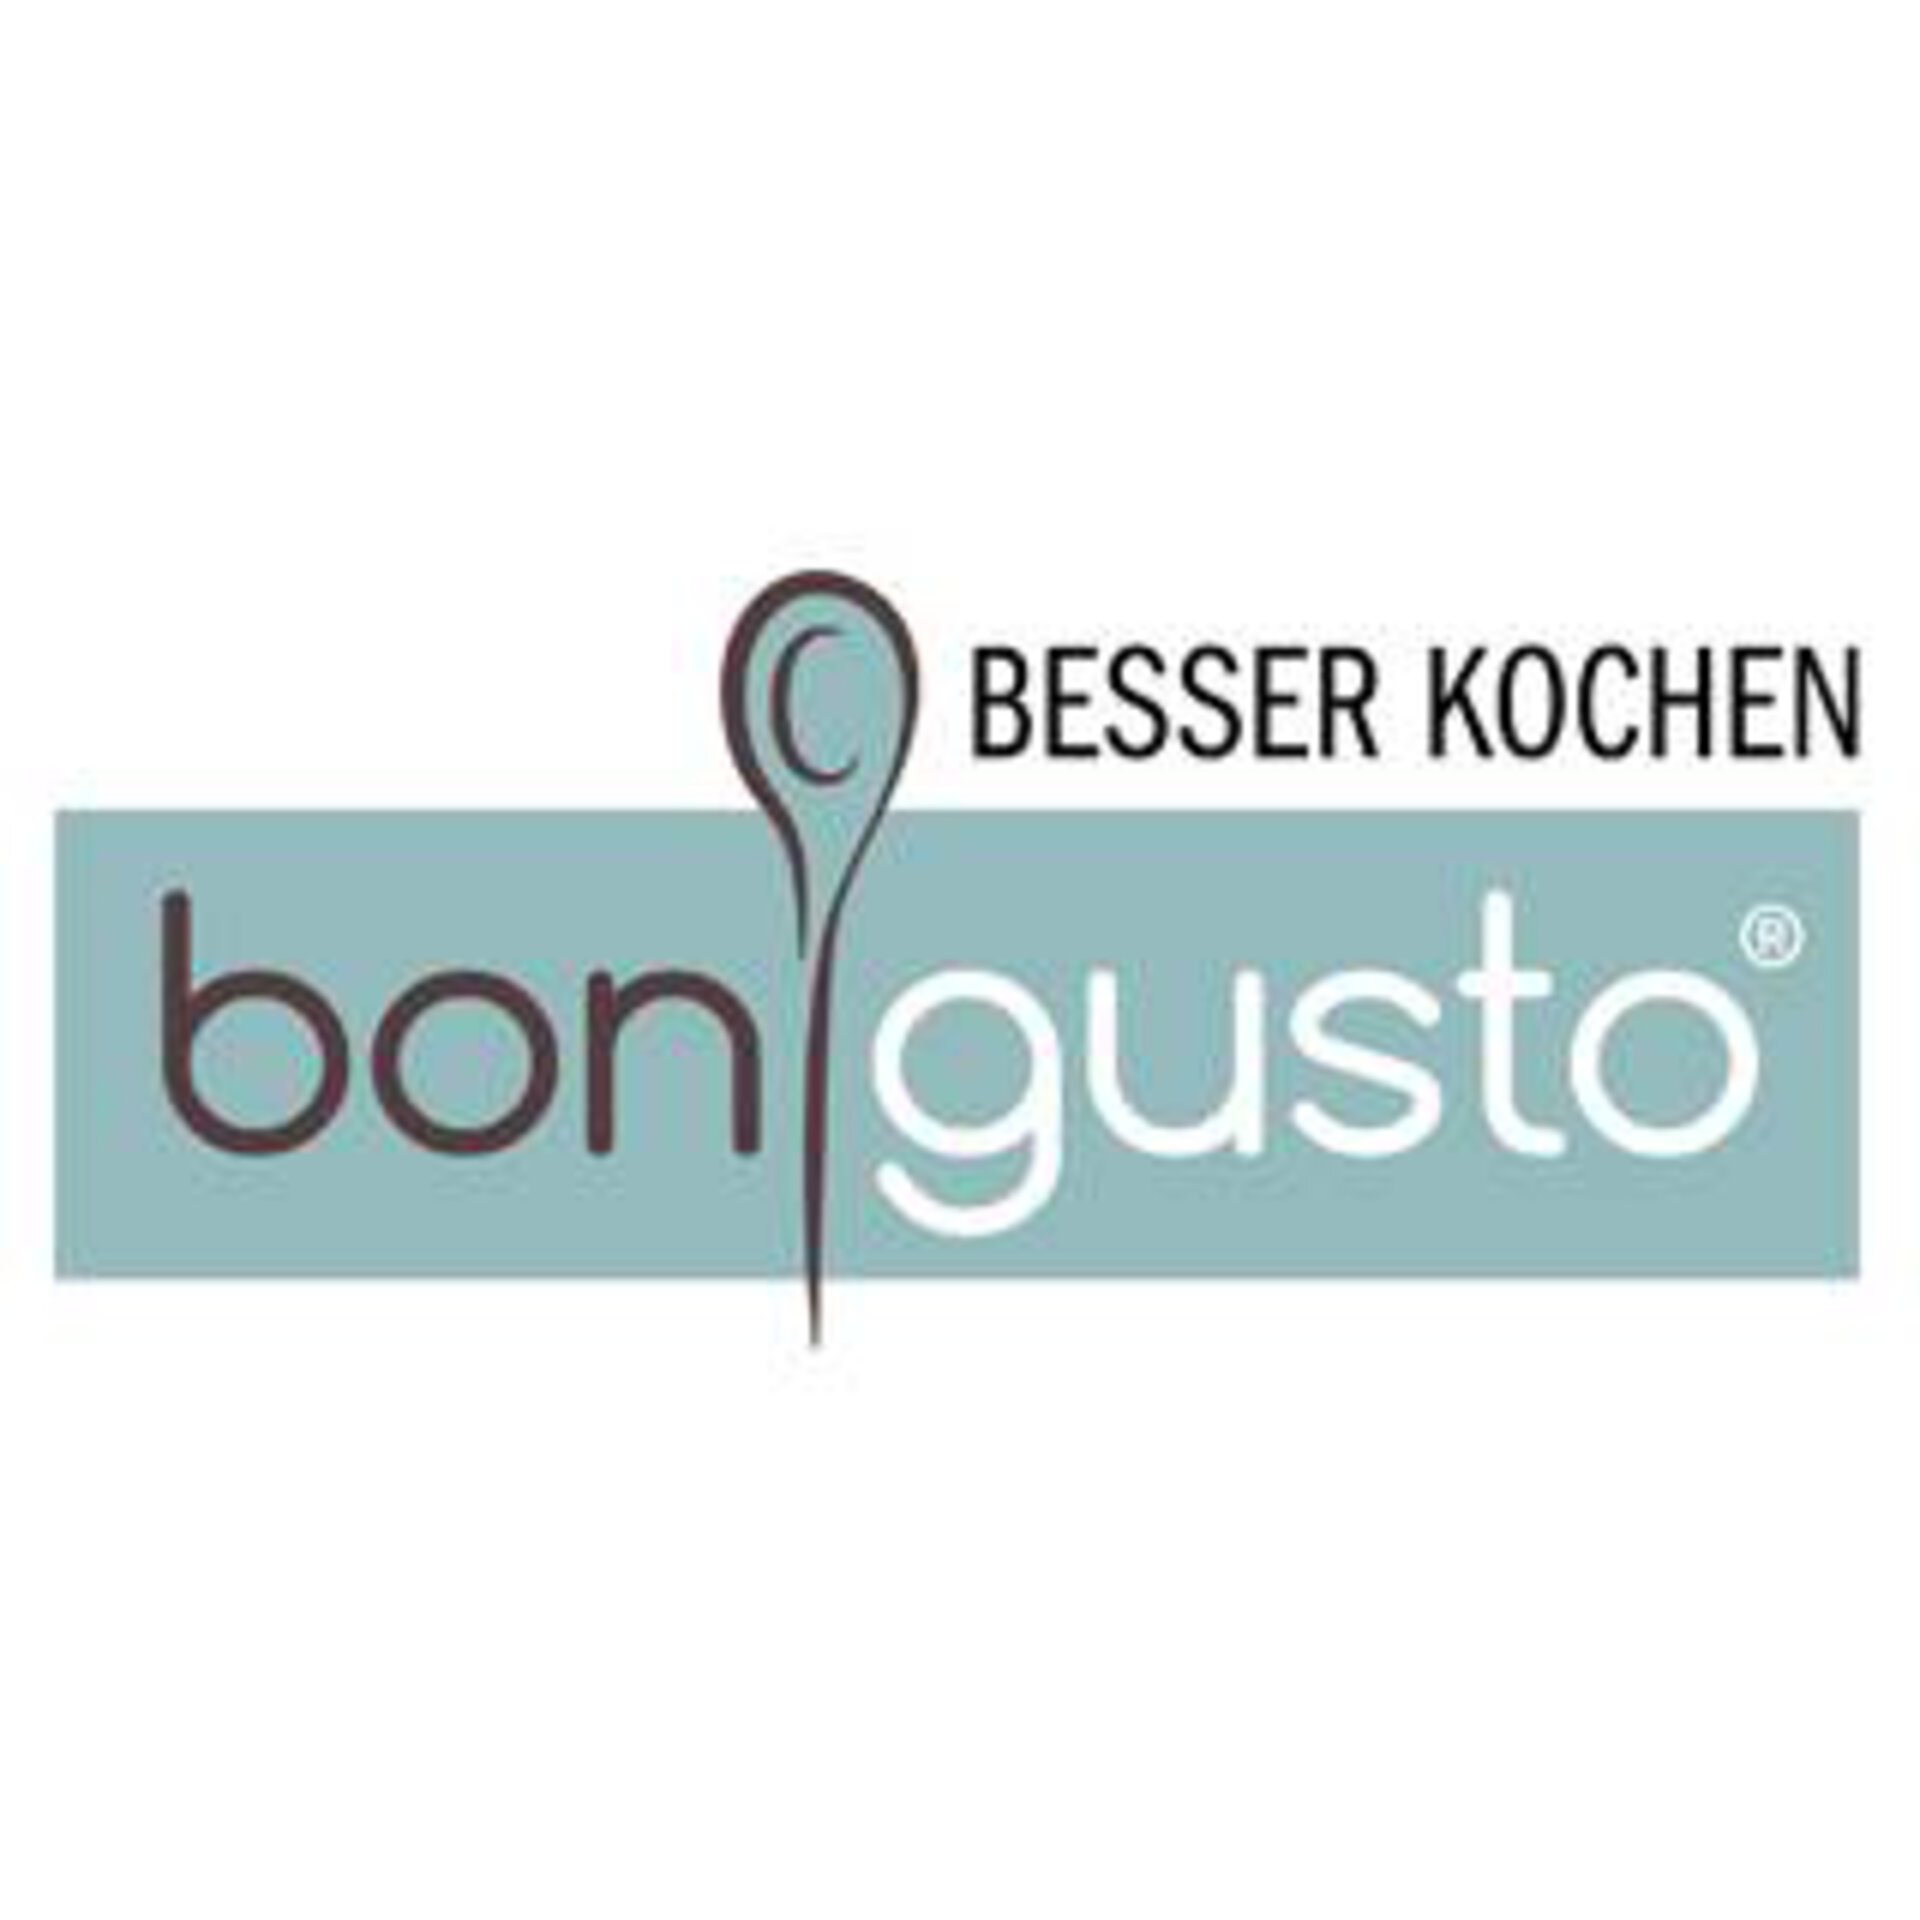 Bongusto Küchenzubehör bei Möbel Inhofer